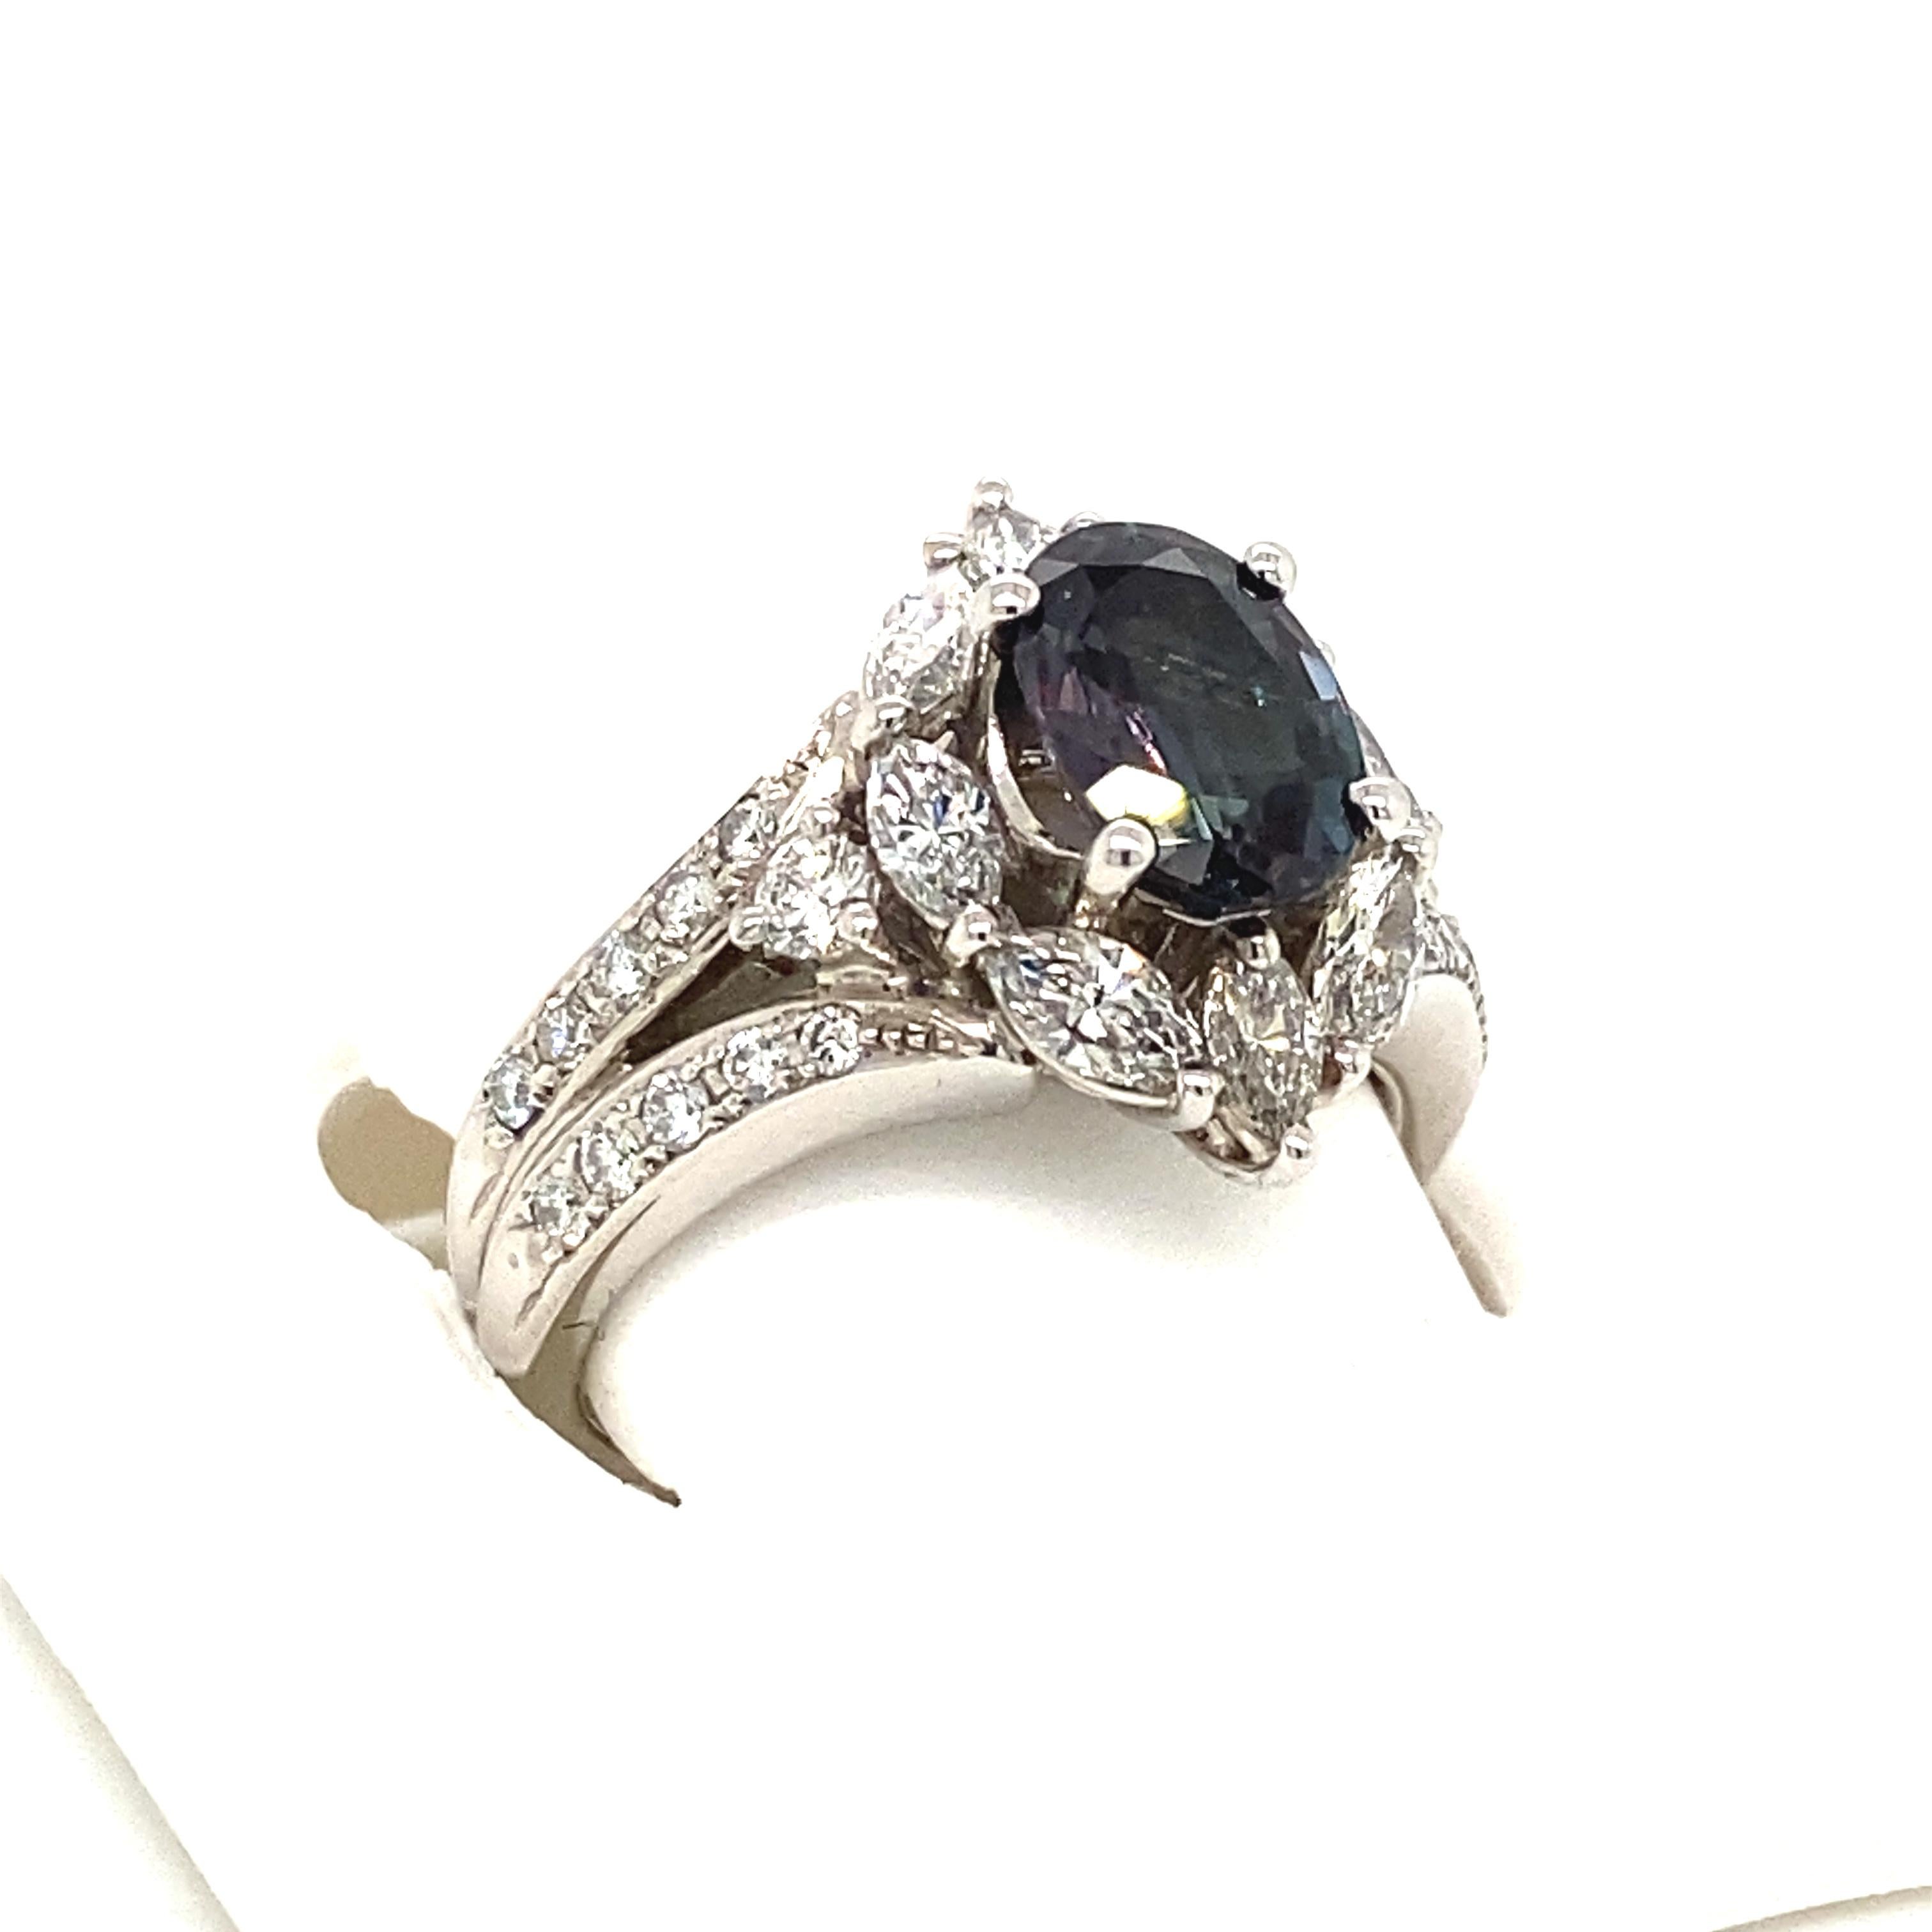 Il s'agit d'une magnifique Alexandrite ovale naturelle de qualité AAA, entourée de délicats diamants et sertie dans une monture vintage en platine. Cette bague présente une alexandrite ovale brésilienne naturelle de 1,74 carat, certifiée par le